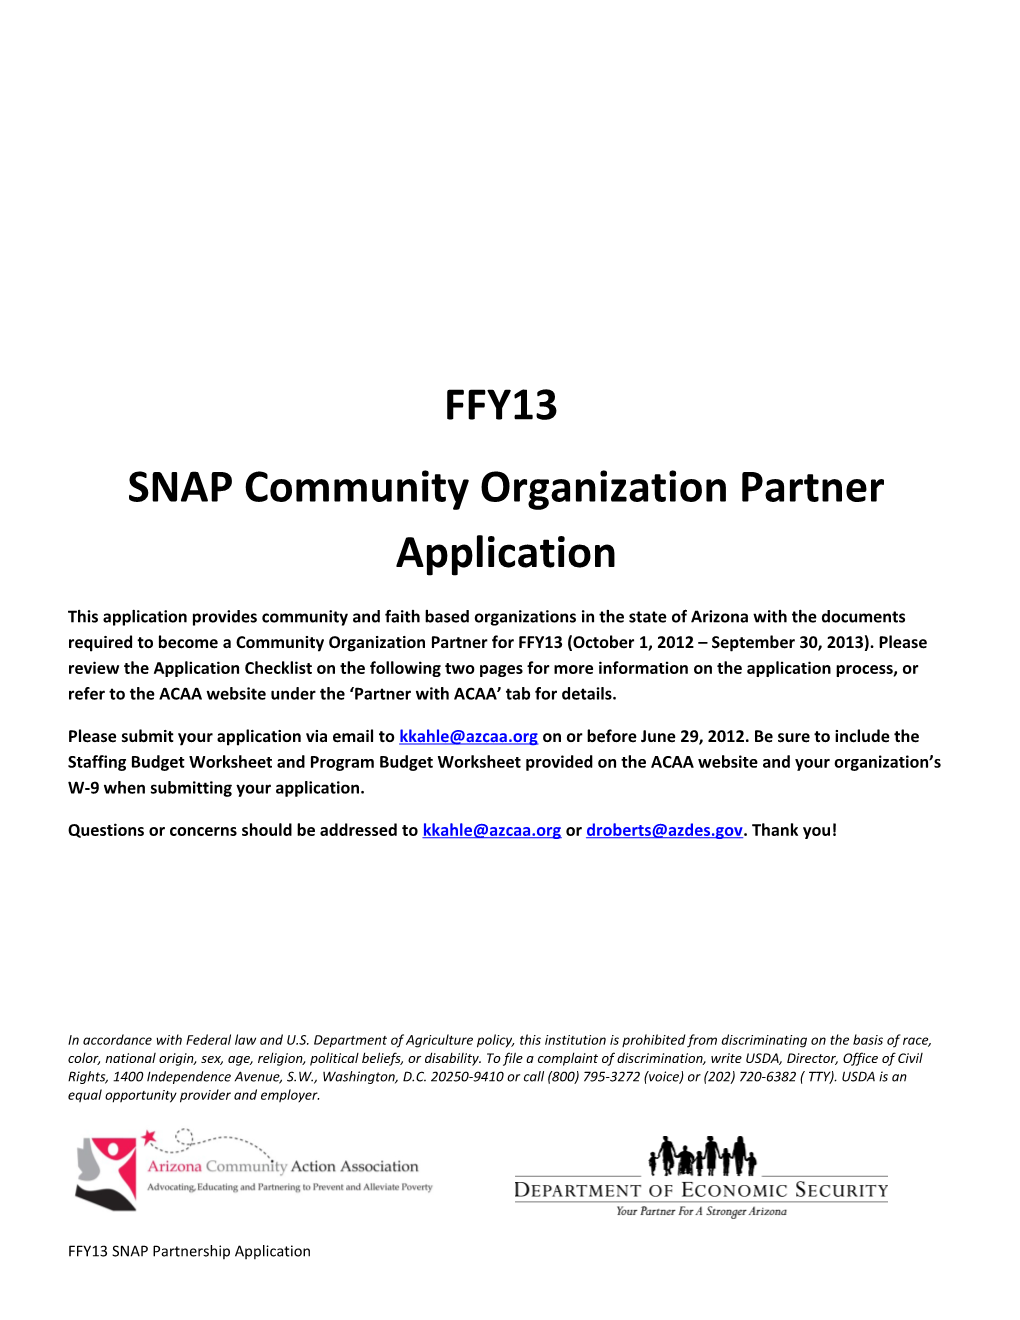 SNAP Community Organization Partner Application